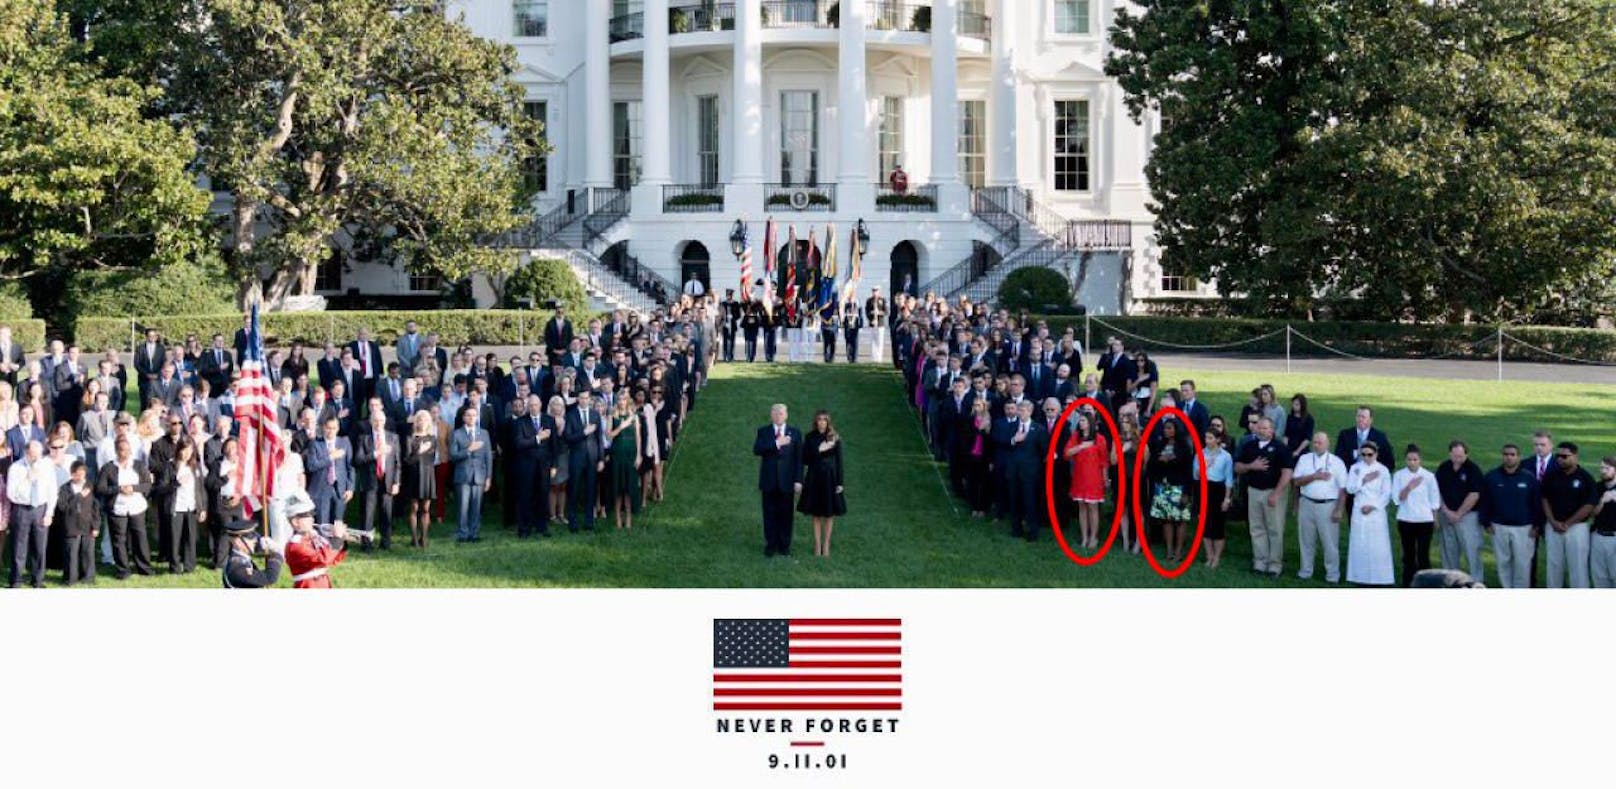 Auf dem Foto sind Hope Hicks (rotes Kleid) und daneben Omarosa Manigault Newman zu sehen, die seit längerem nicht mehr für Trump arbeiten.